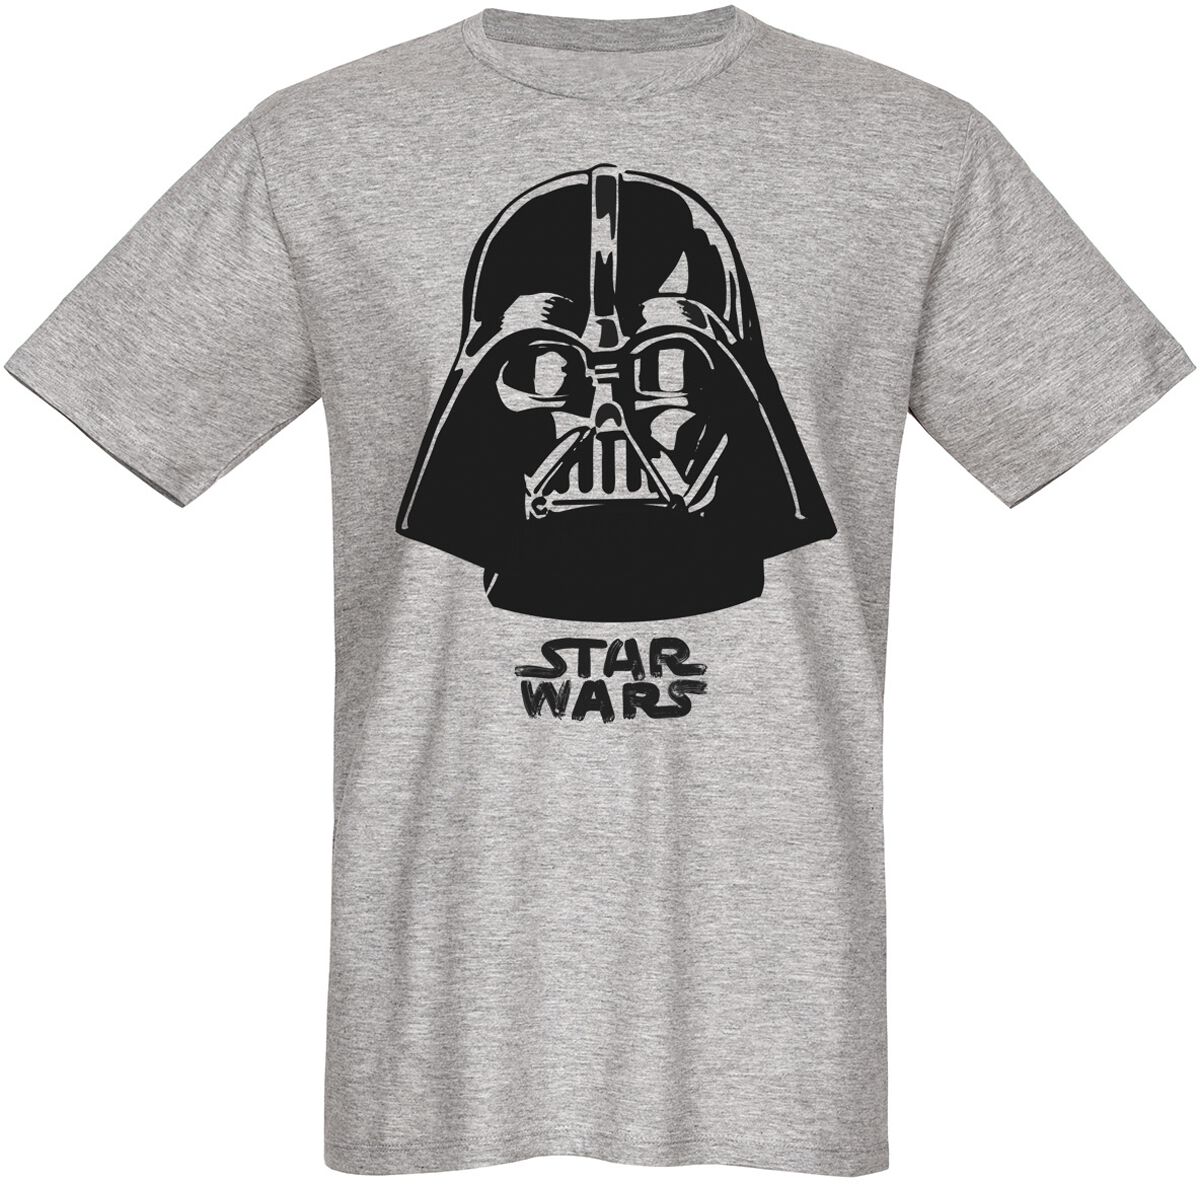 Star Wars T-Shirt - Darth Vader - The Boss - S bis 3XL - für Männer - Größe 3XL - grau  - Lizenzierter Fanartikel